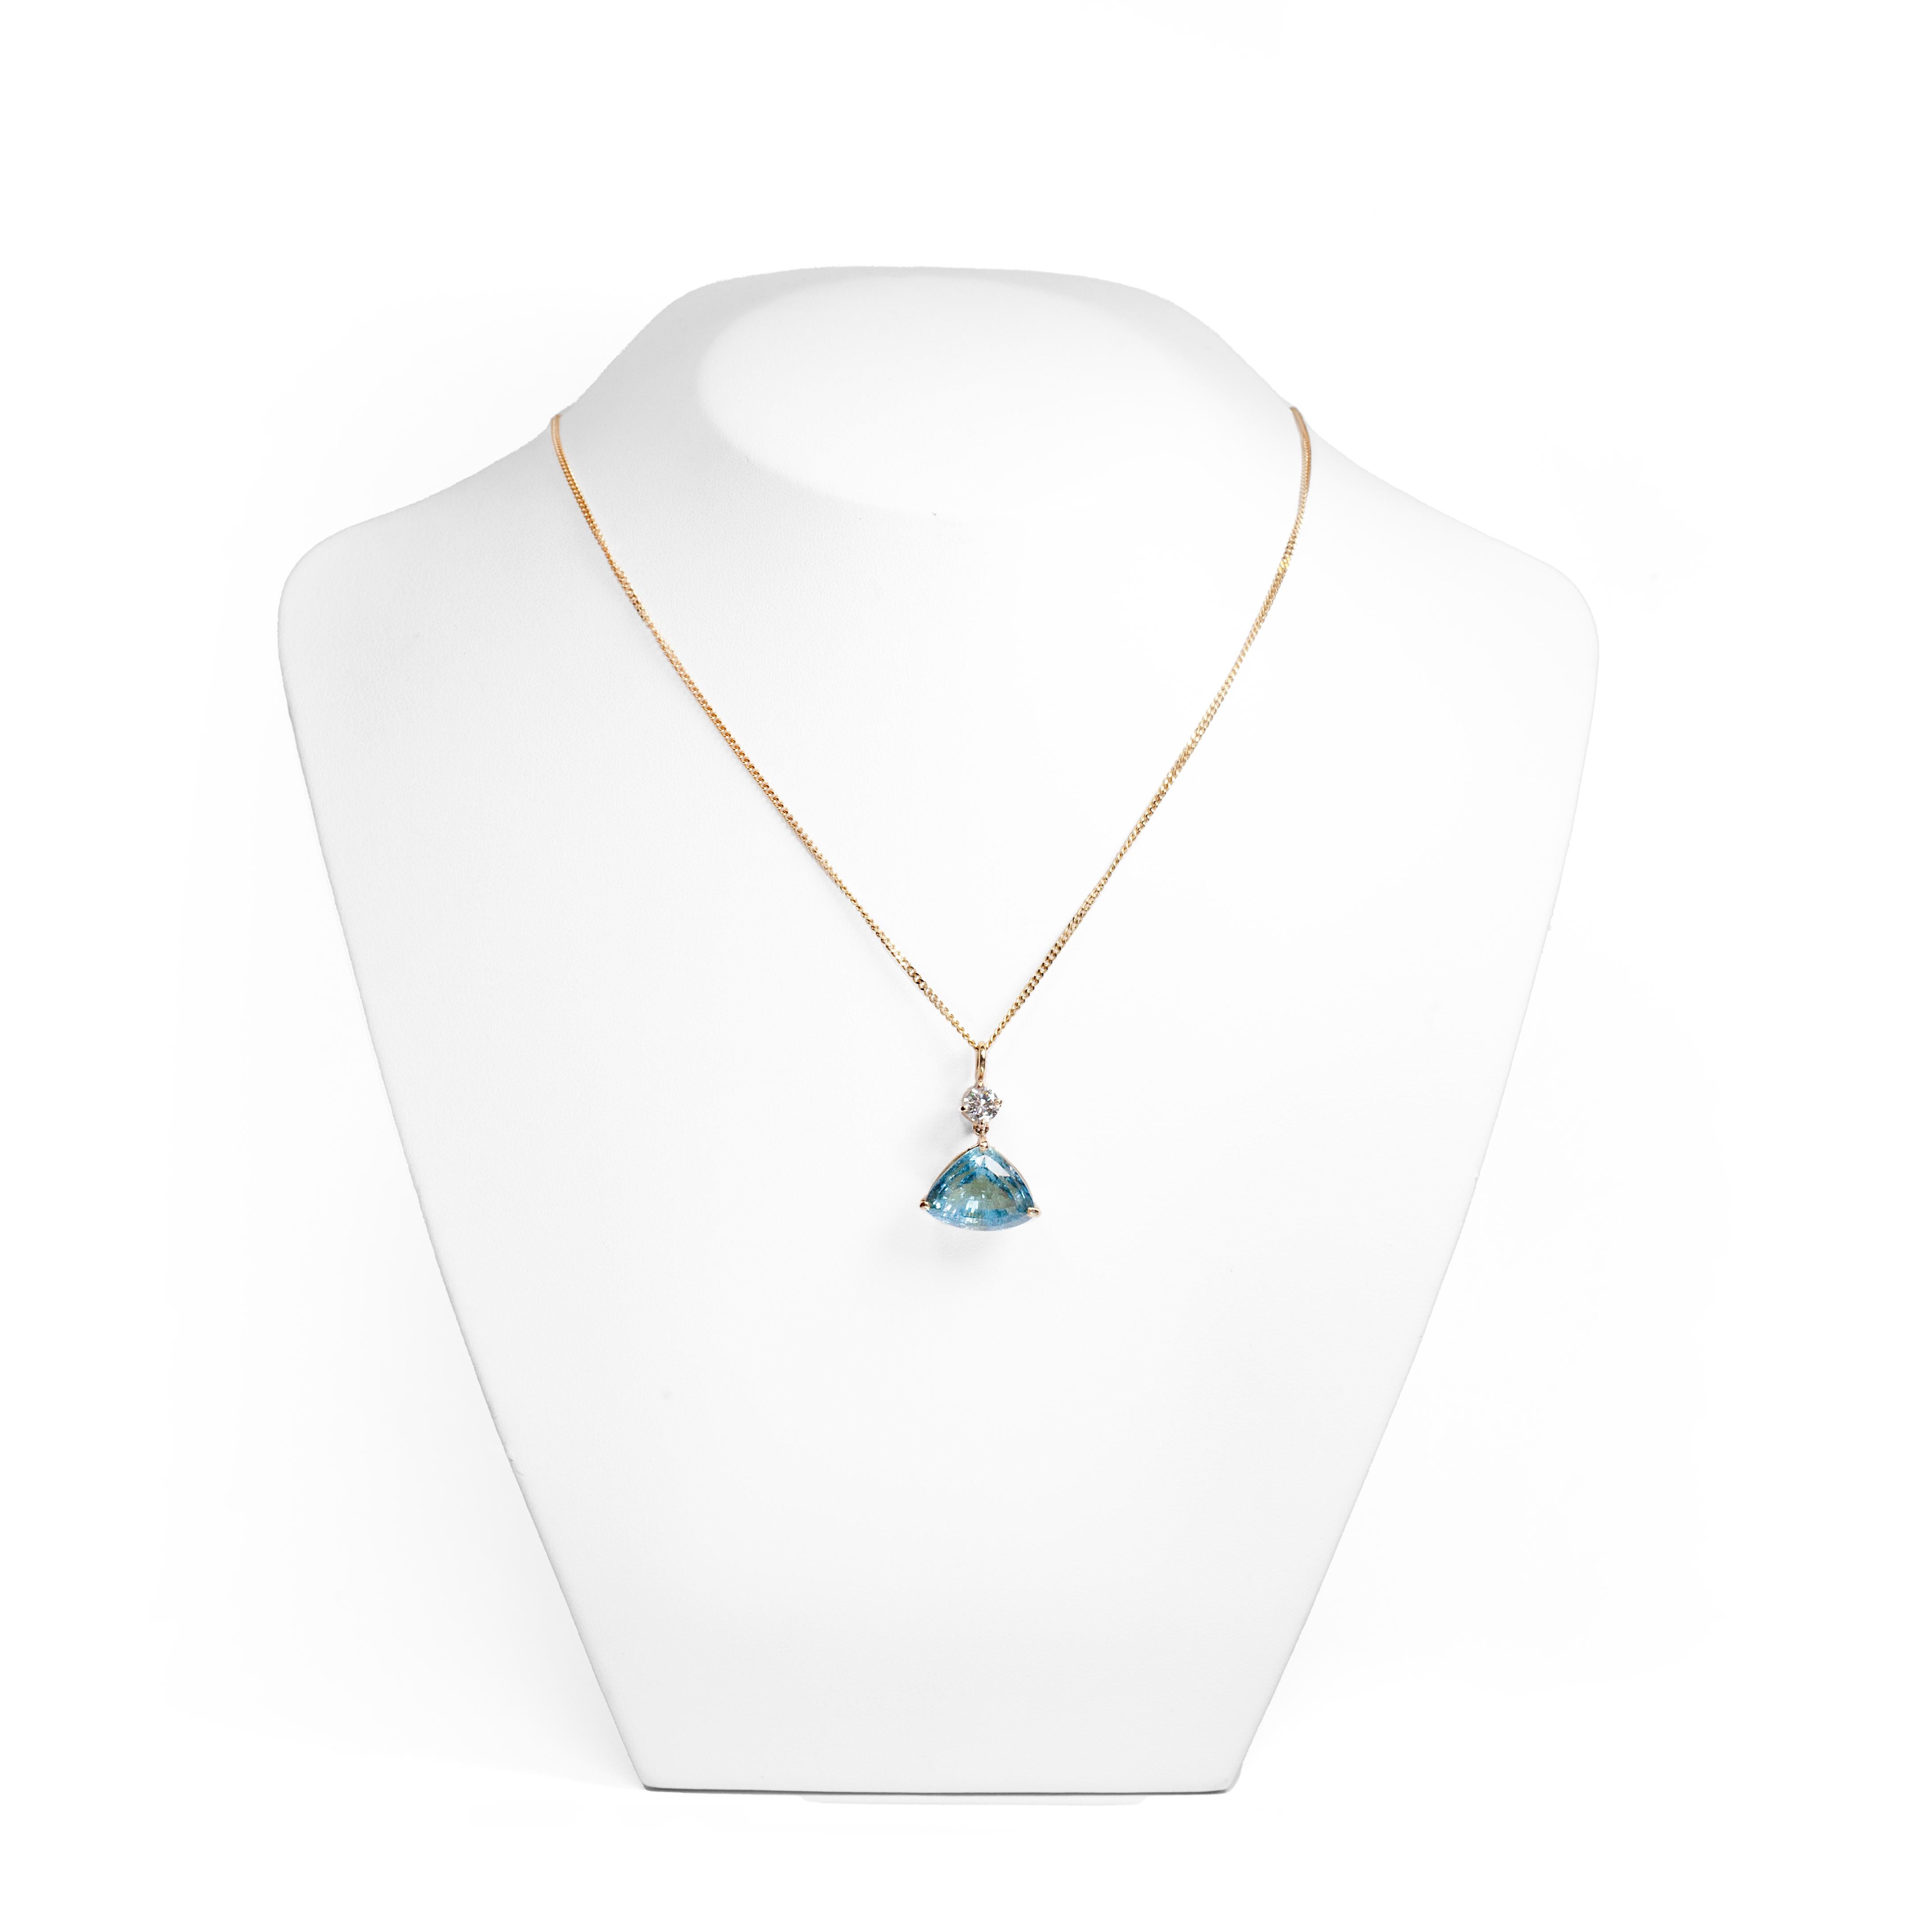 Ce collier d'aigue-marine et de diamants est élégant dans son design simpliste. 

Un diamant de 0,41 carat de belle qualité est soigneusement serti dans quatre griffes, à partir desquelles l'aigue-marine de taille fantaisie, dont le poids est estimé